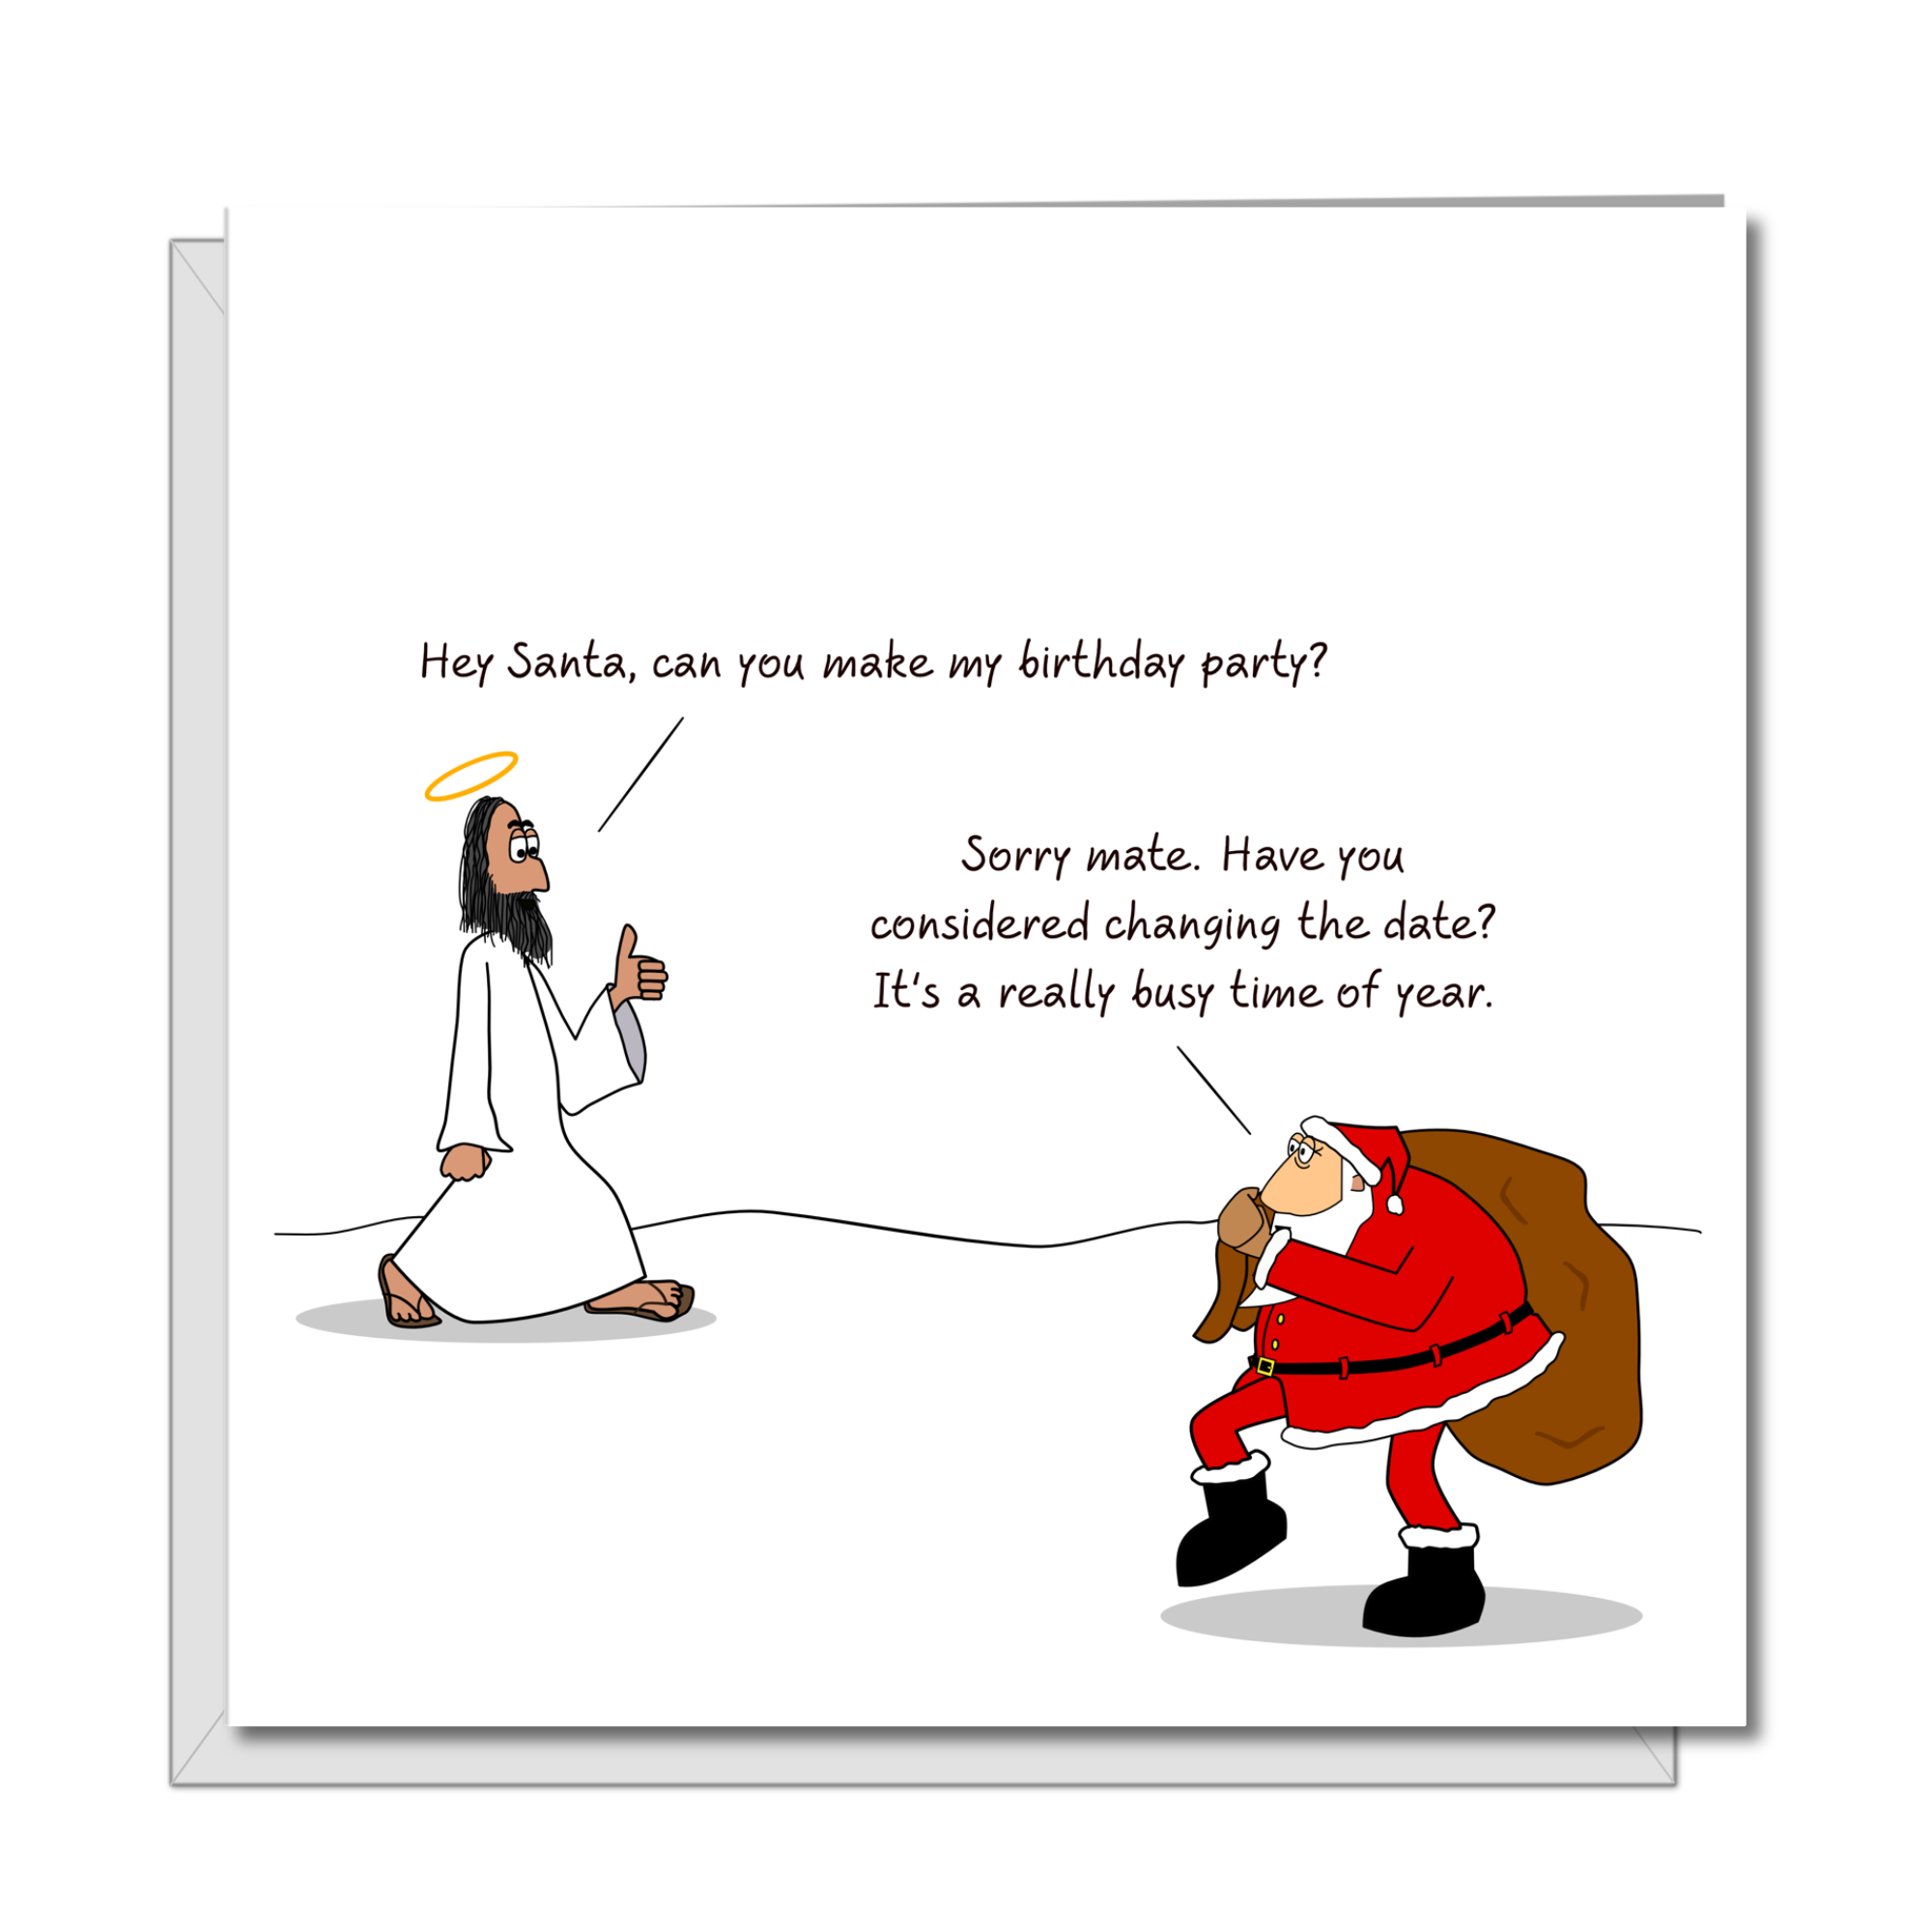 Funny Christmas Card - Jesus and Santa Claus - Humorous / Humor - Joke Cartoon